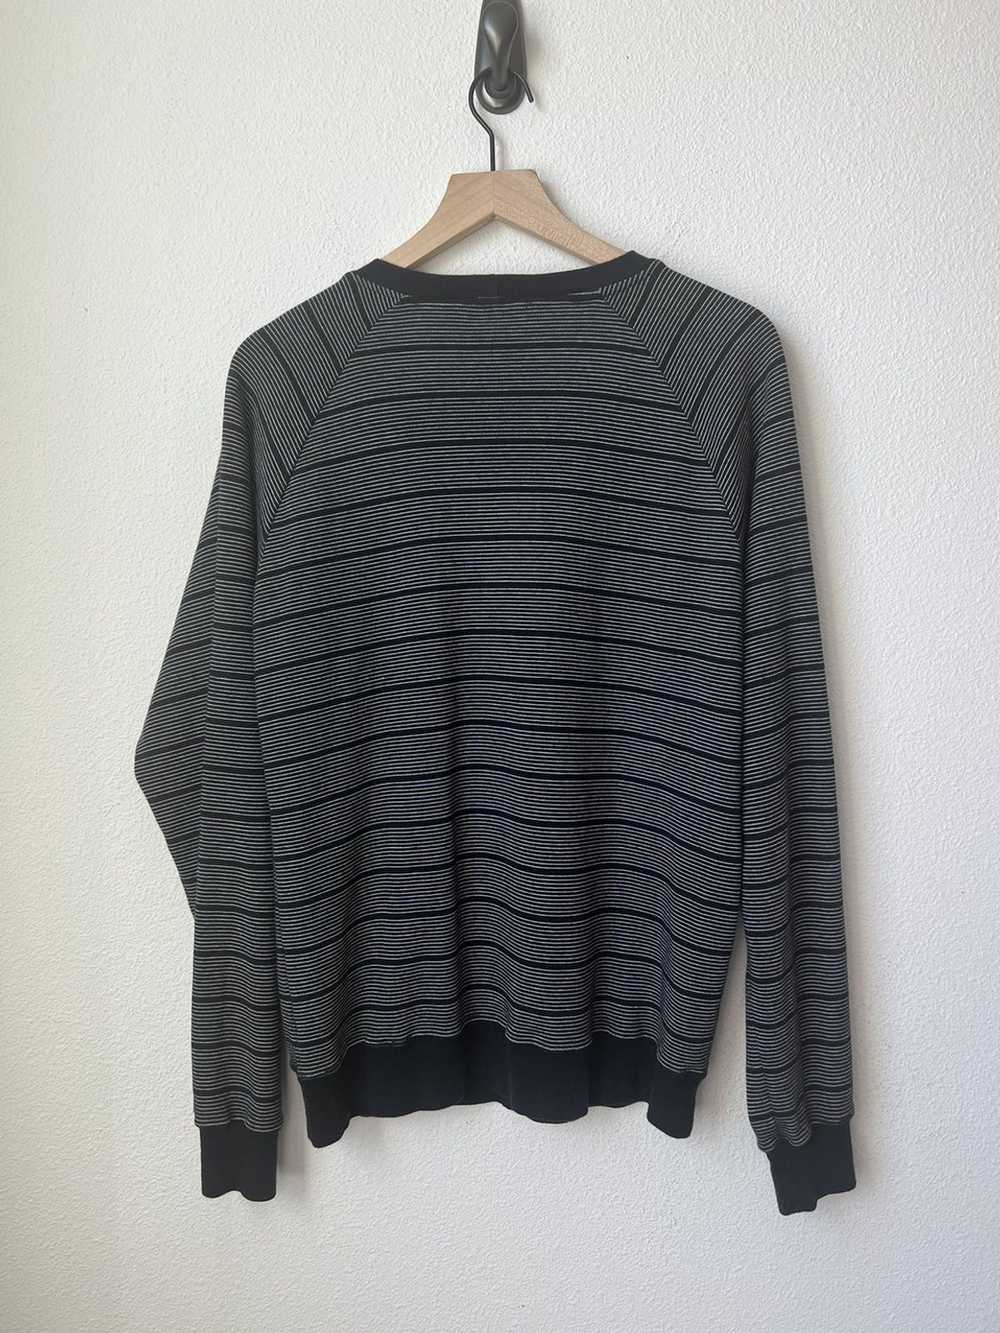 Hentsch Man Hentsch Man cotton sweater - image 3